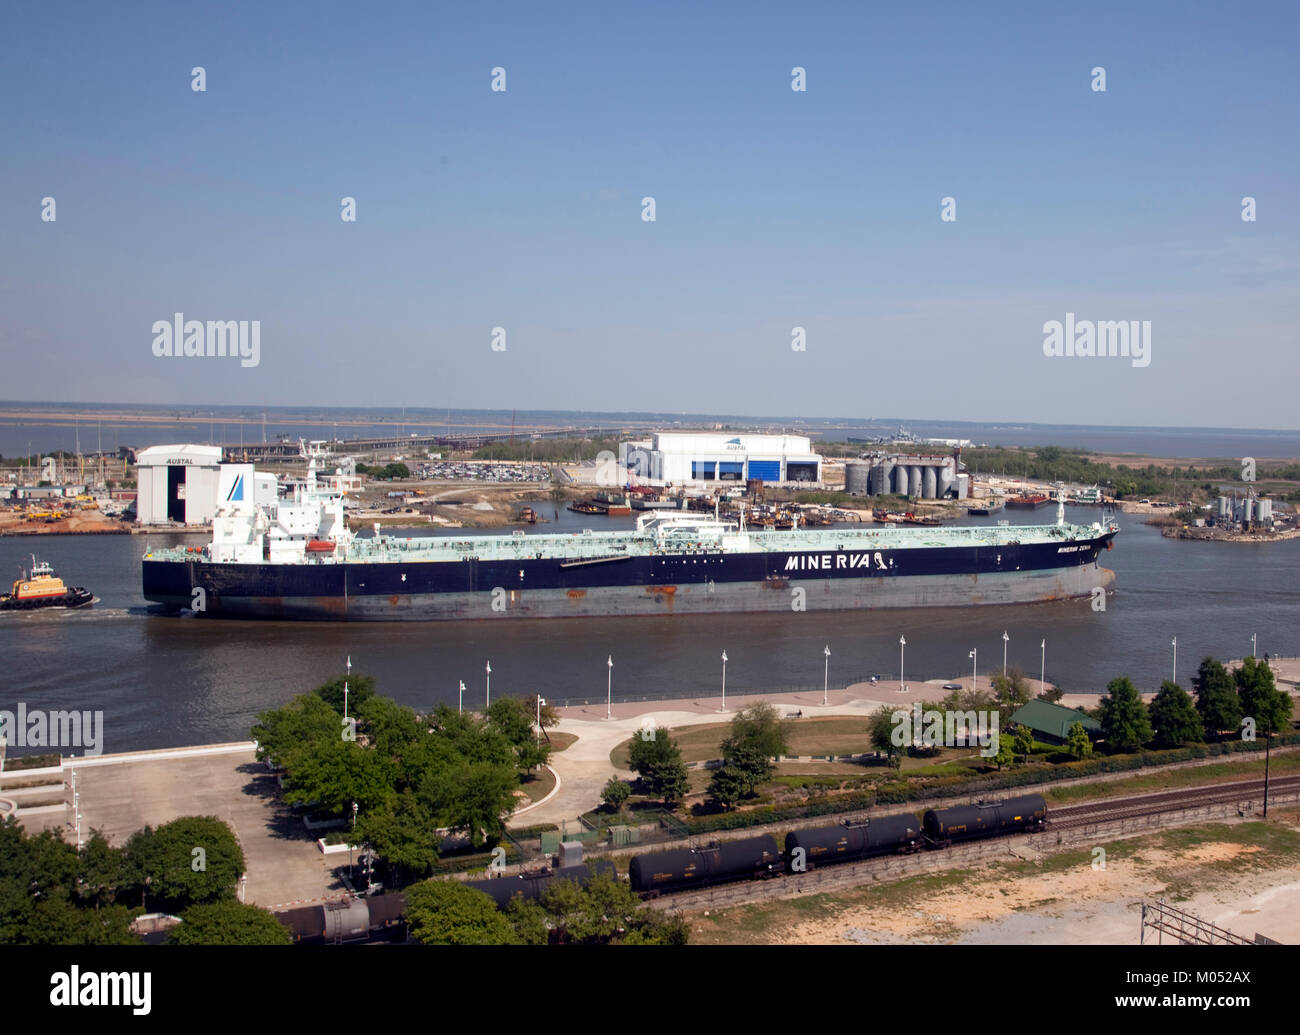 Oil Tanker Minera in Mobile Bay Stock Photo